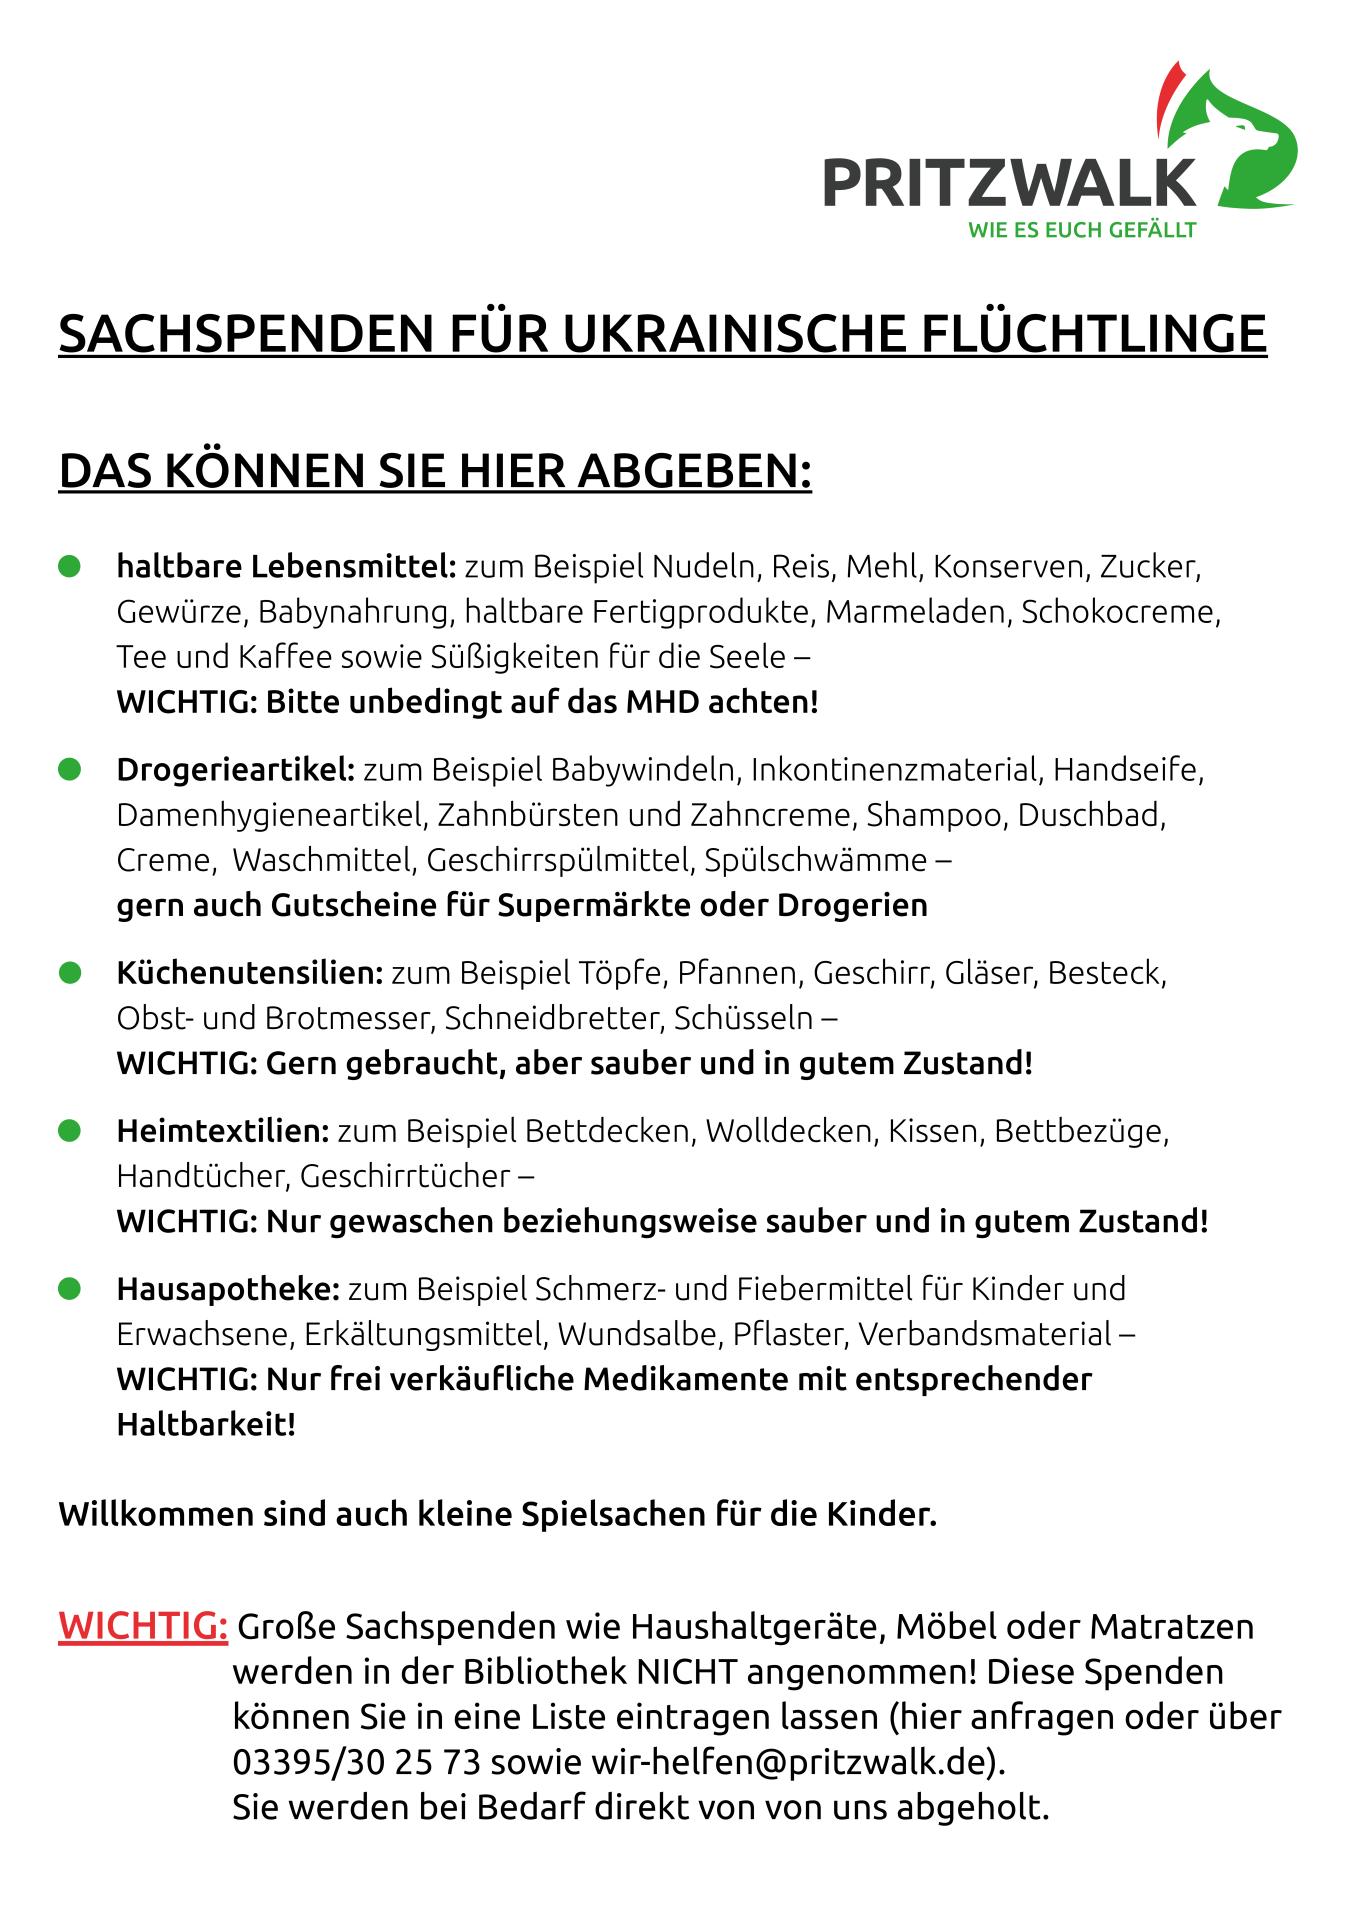 Liste mit geeigneten Spenden für ukrainische Flüchtlinge. Quelle: Stadt Pritzwalk